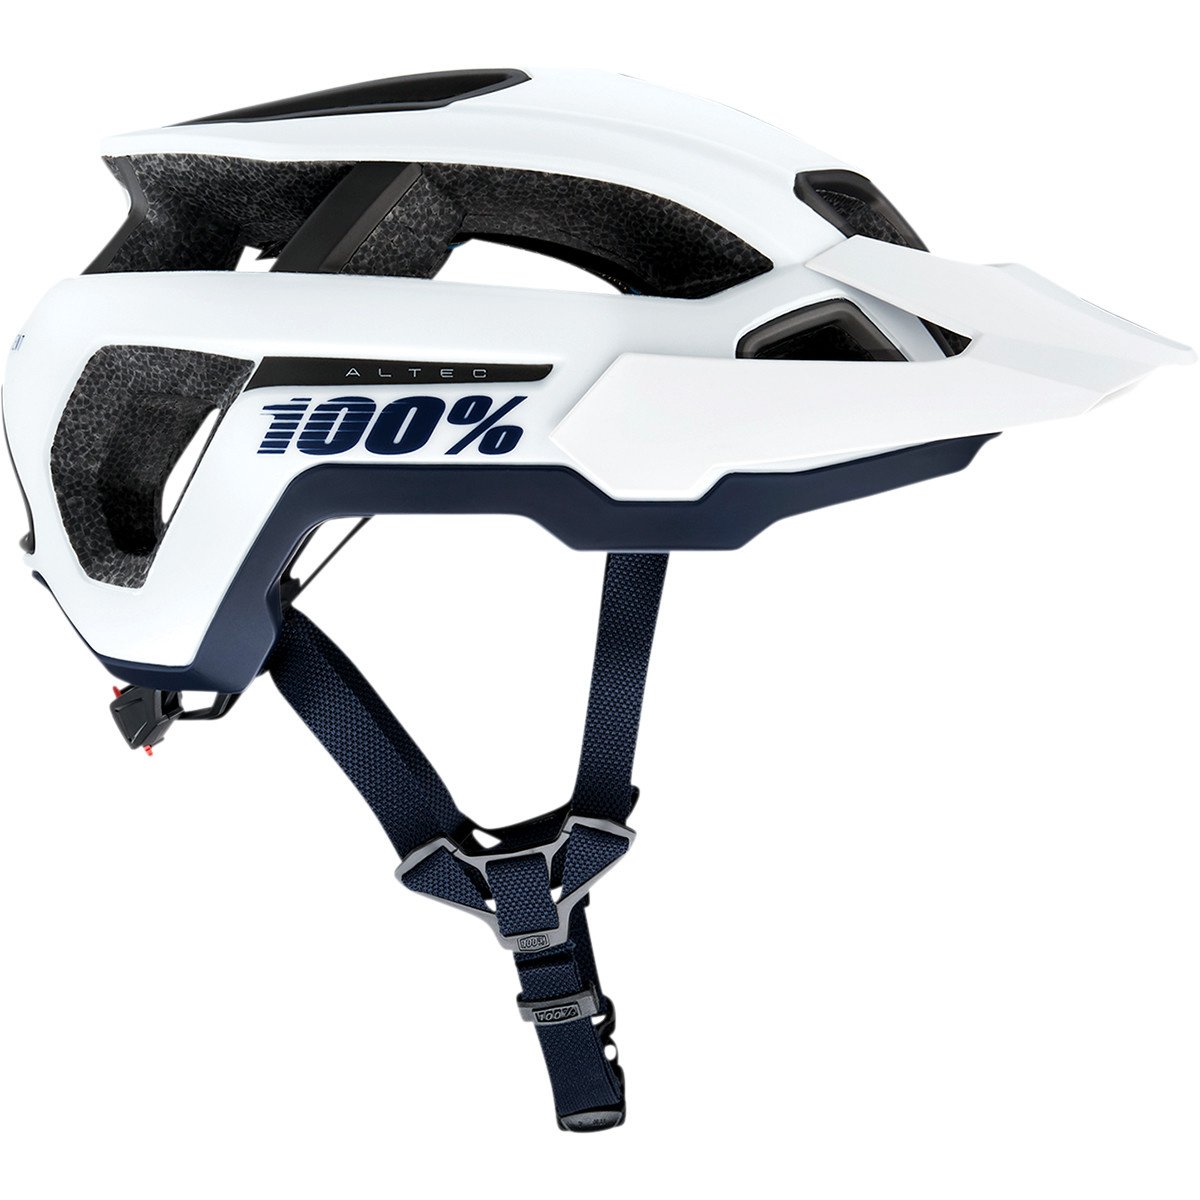 100% - ALTEC Helmet